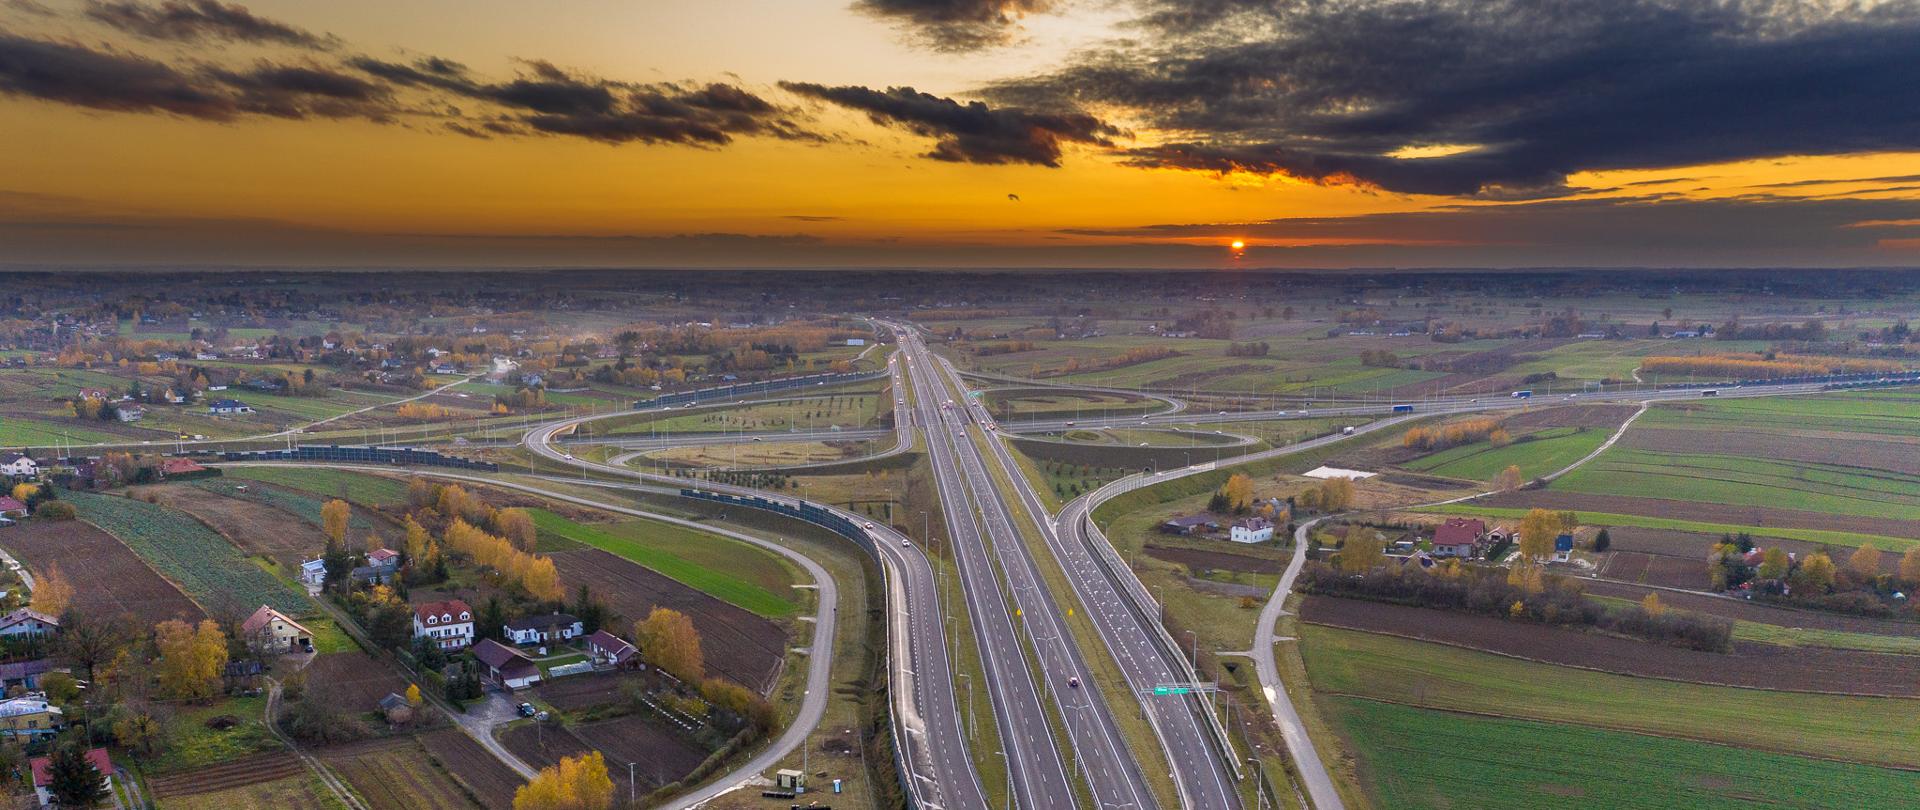 Zdjęcie lotnicze węzła Lublin Sławinek na połączeniu dróg ekspresowych S12 i S17. Zdjęcie wykonane przy zachodzie Słońca. Widoczny ruch pojazdów na obu drogach ekspresowych. W tle widoczne zabudowania oraz pola uprawne i łąki.